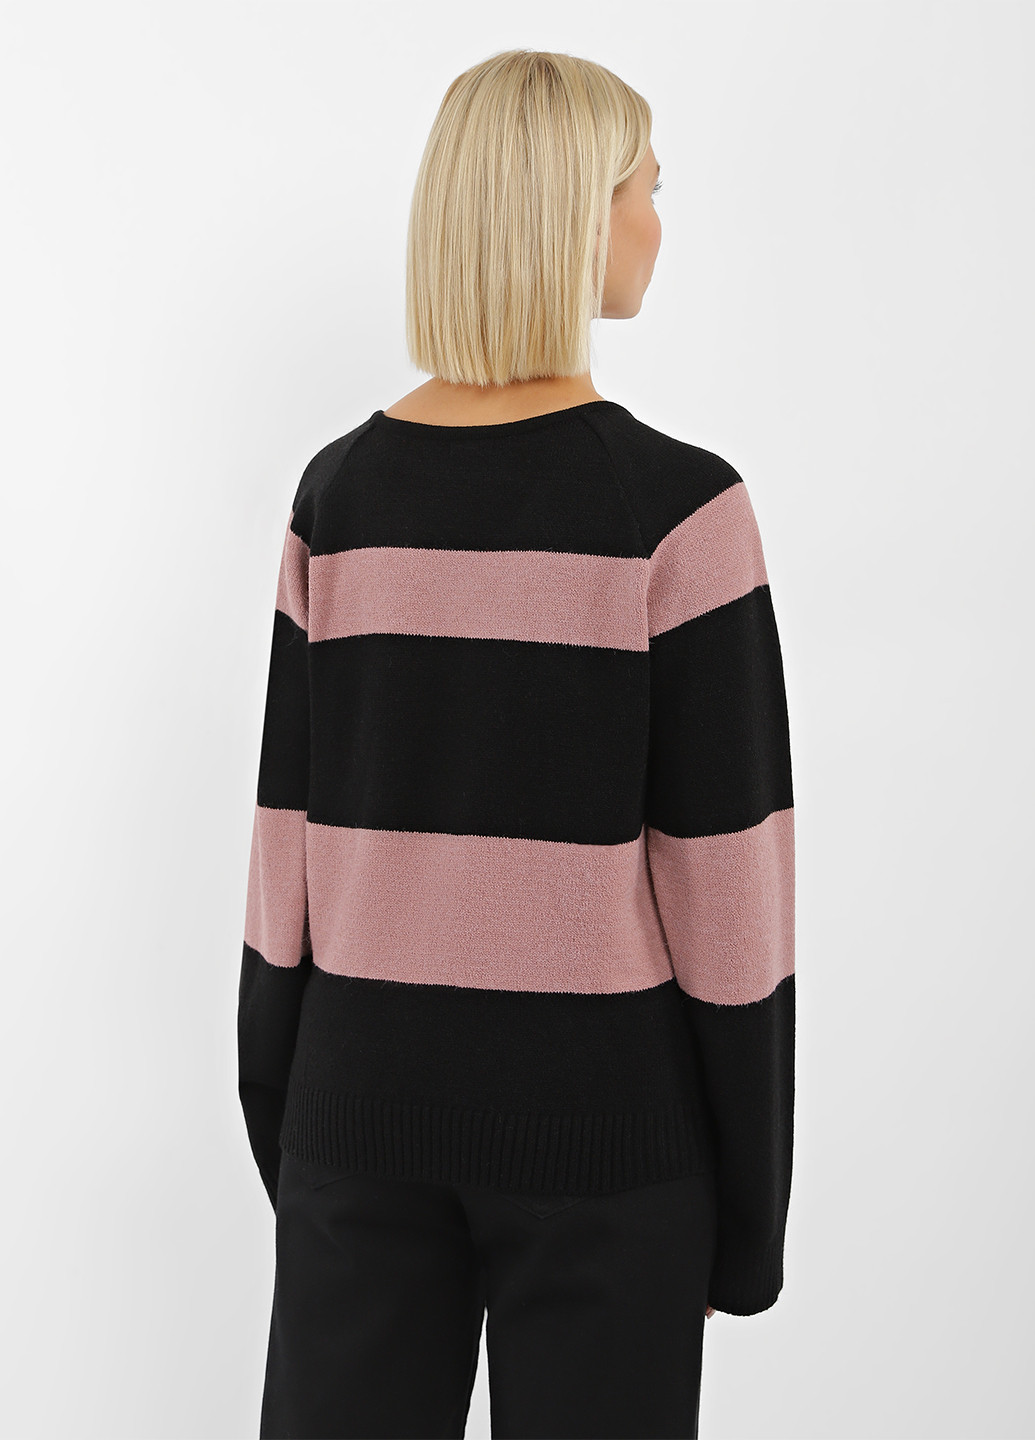 Комбинированный демисезонный пуловер пуловер Sewel